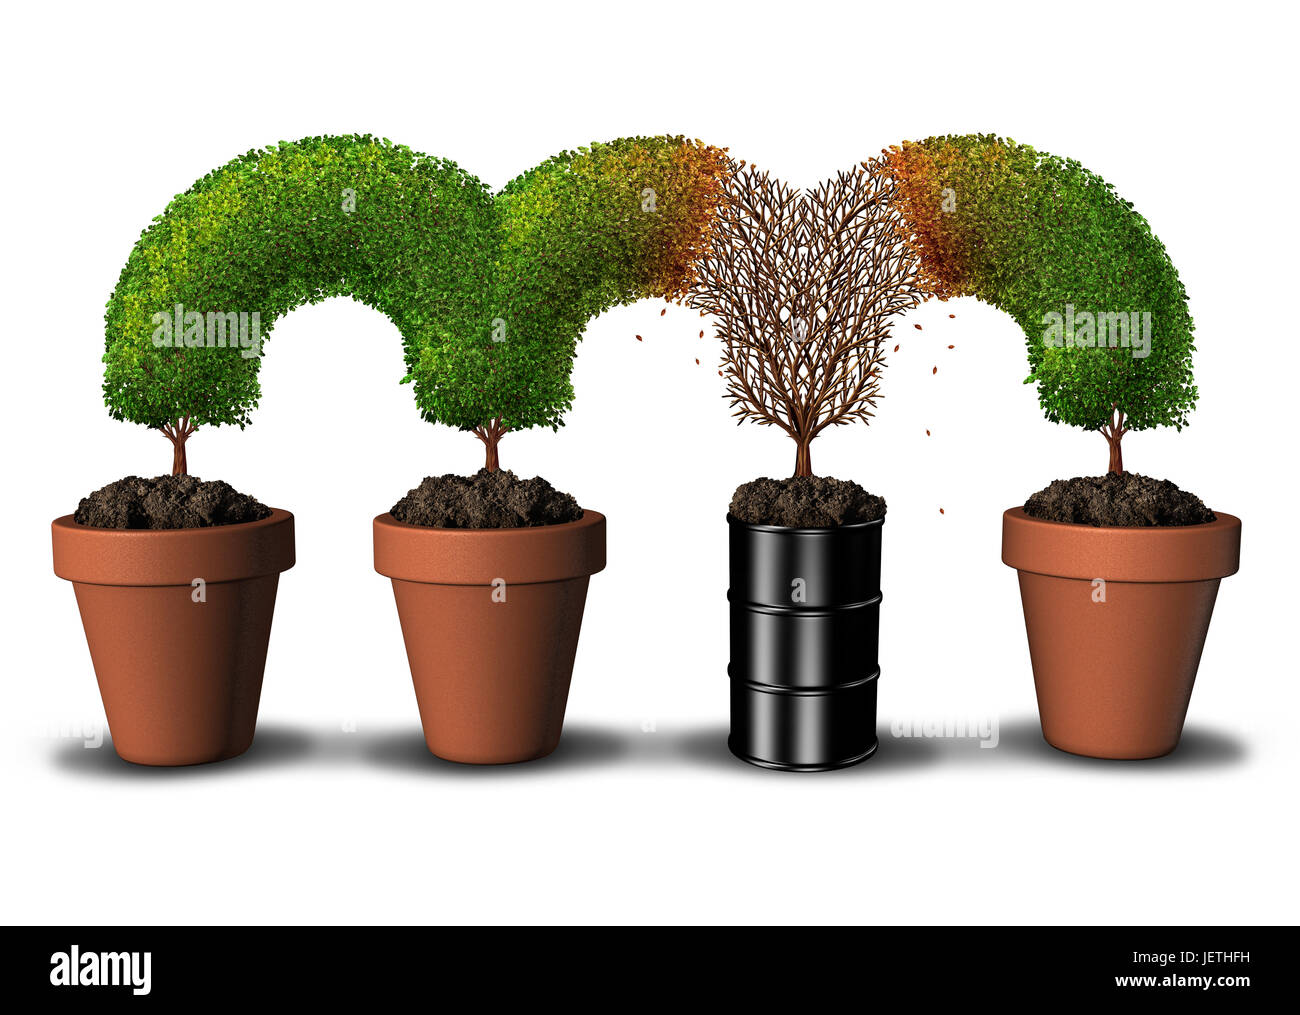 Environnement contaminé concept avec la pollution et les contaminants toxiques dans le sol comme un arbre mort un segment croissant dans une huile de pétrole. Banque D'Images